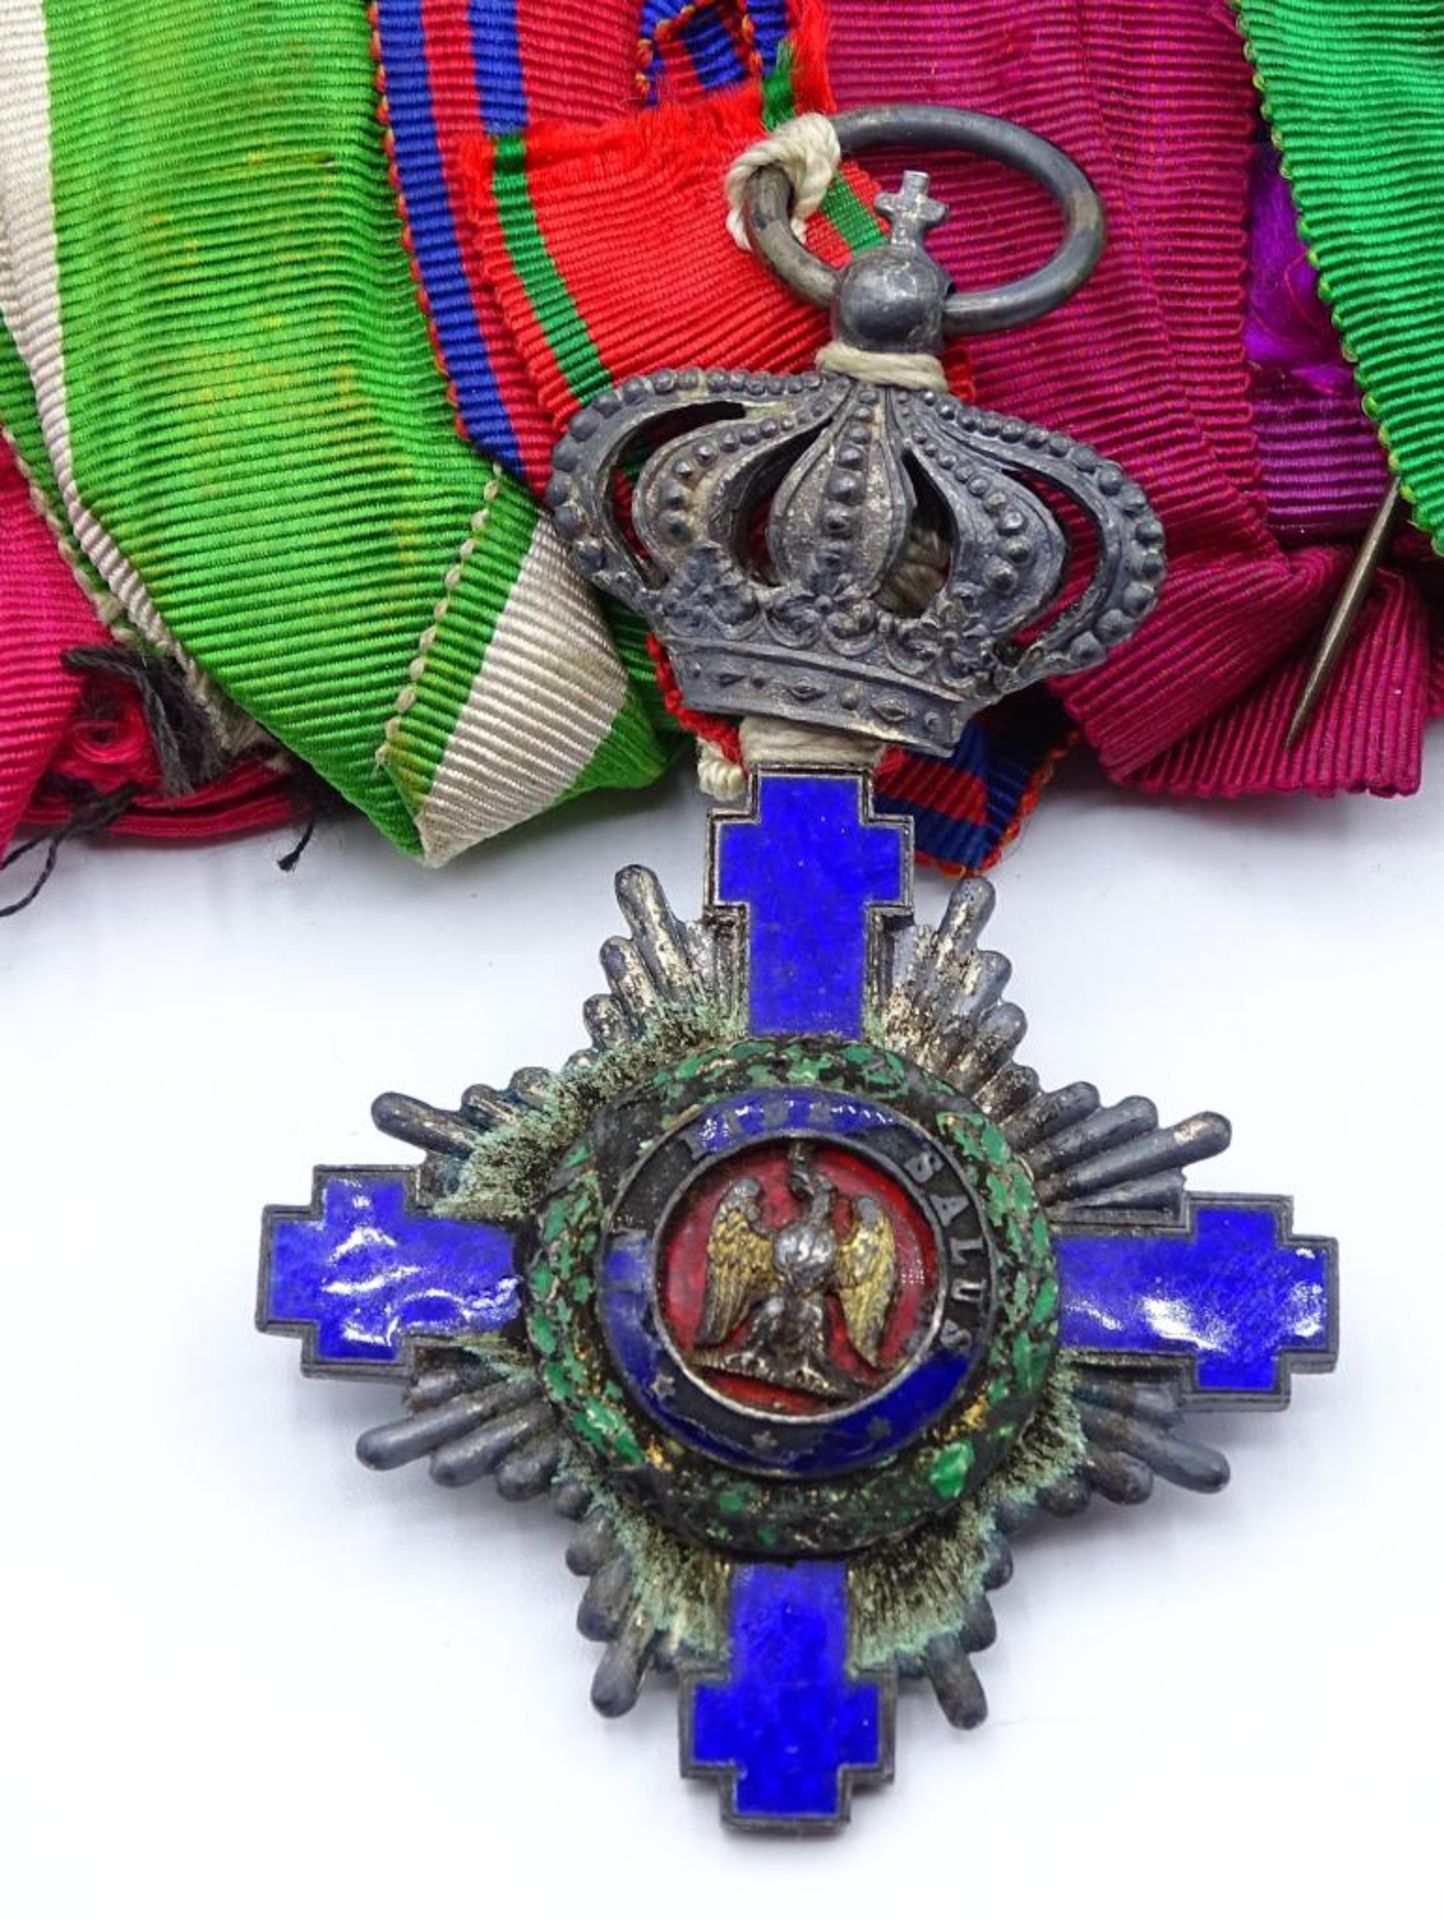 Lange Ordensspange mit 5 Orden/Abzeichen/Medaillen,Königreich Rumänien Orden vom Stern Rumäniens- - Bild 2 aus 10